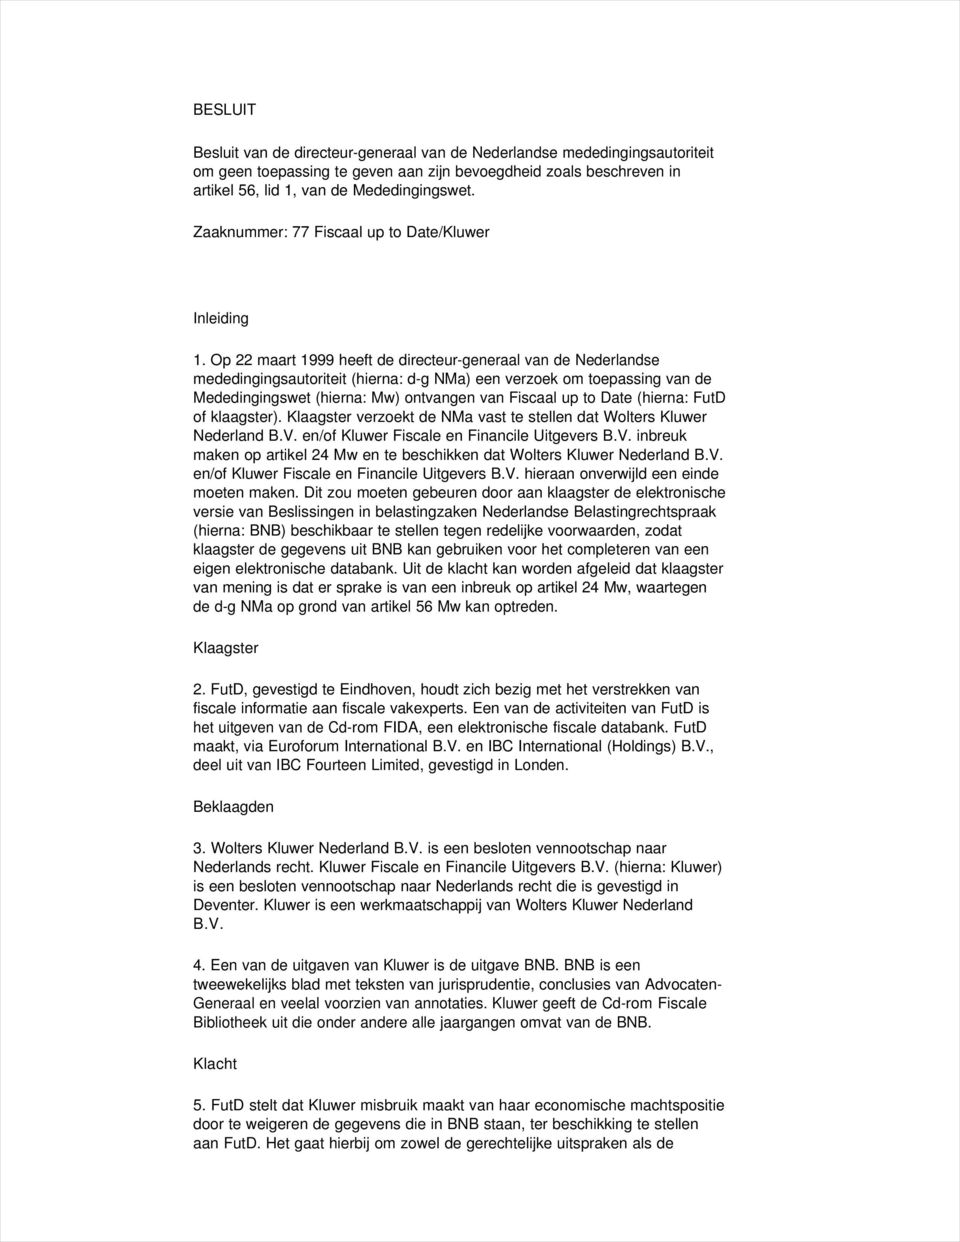 Op 22 maart 1999 heeft de directeur-generaal van de Nederlandse mededingingsautoriteit (hierna: d-g NMa) een verzoek om toepassing van de Mededingingswet (hierna: Mw) ontvangen van Fiscaal up to Date